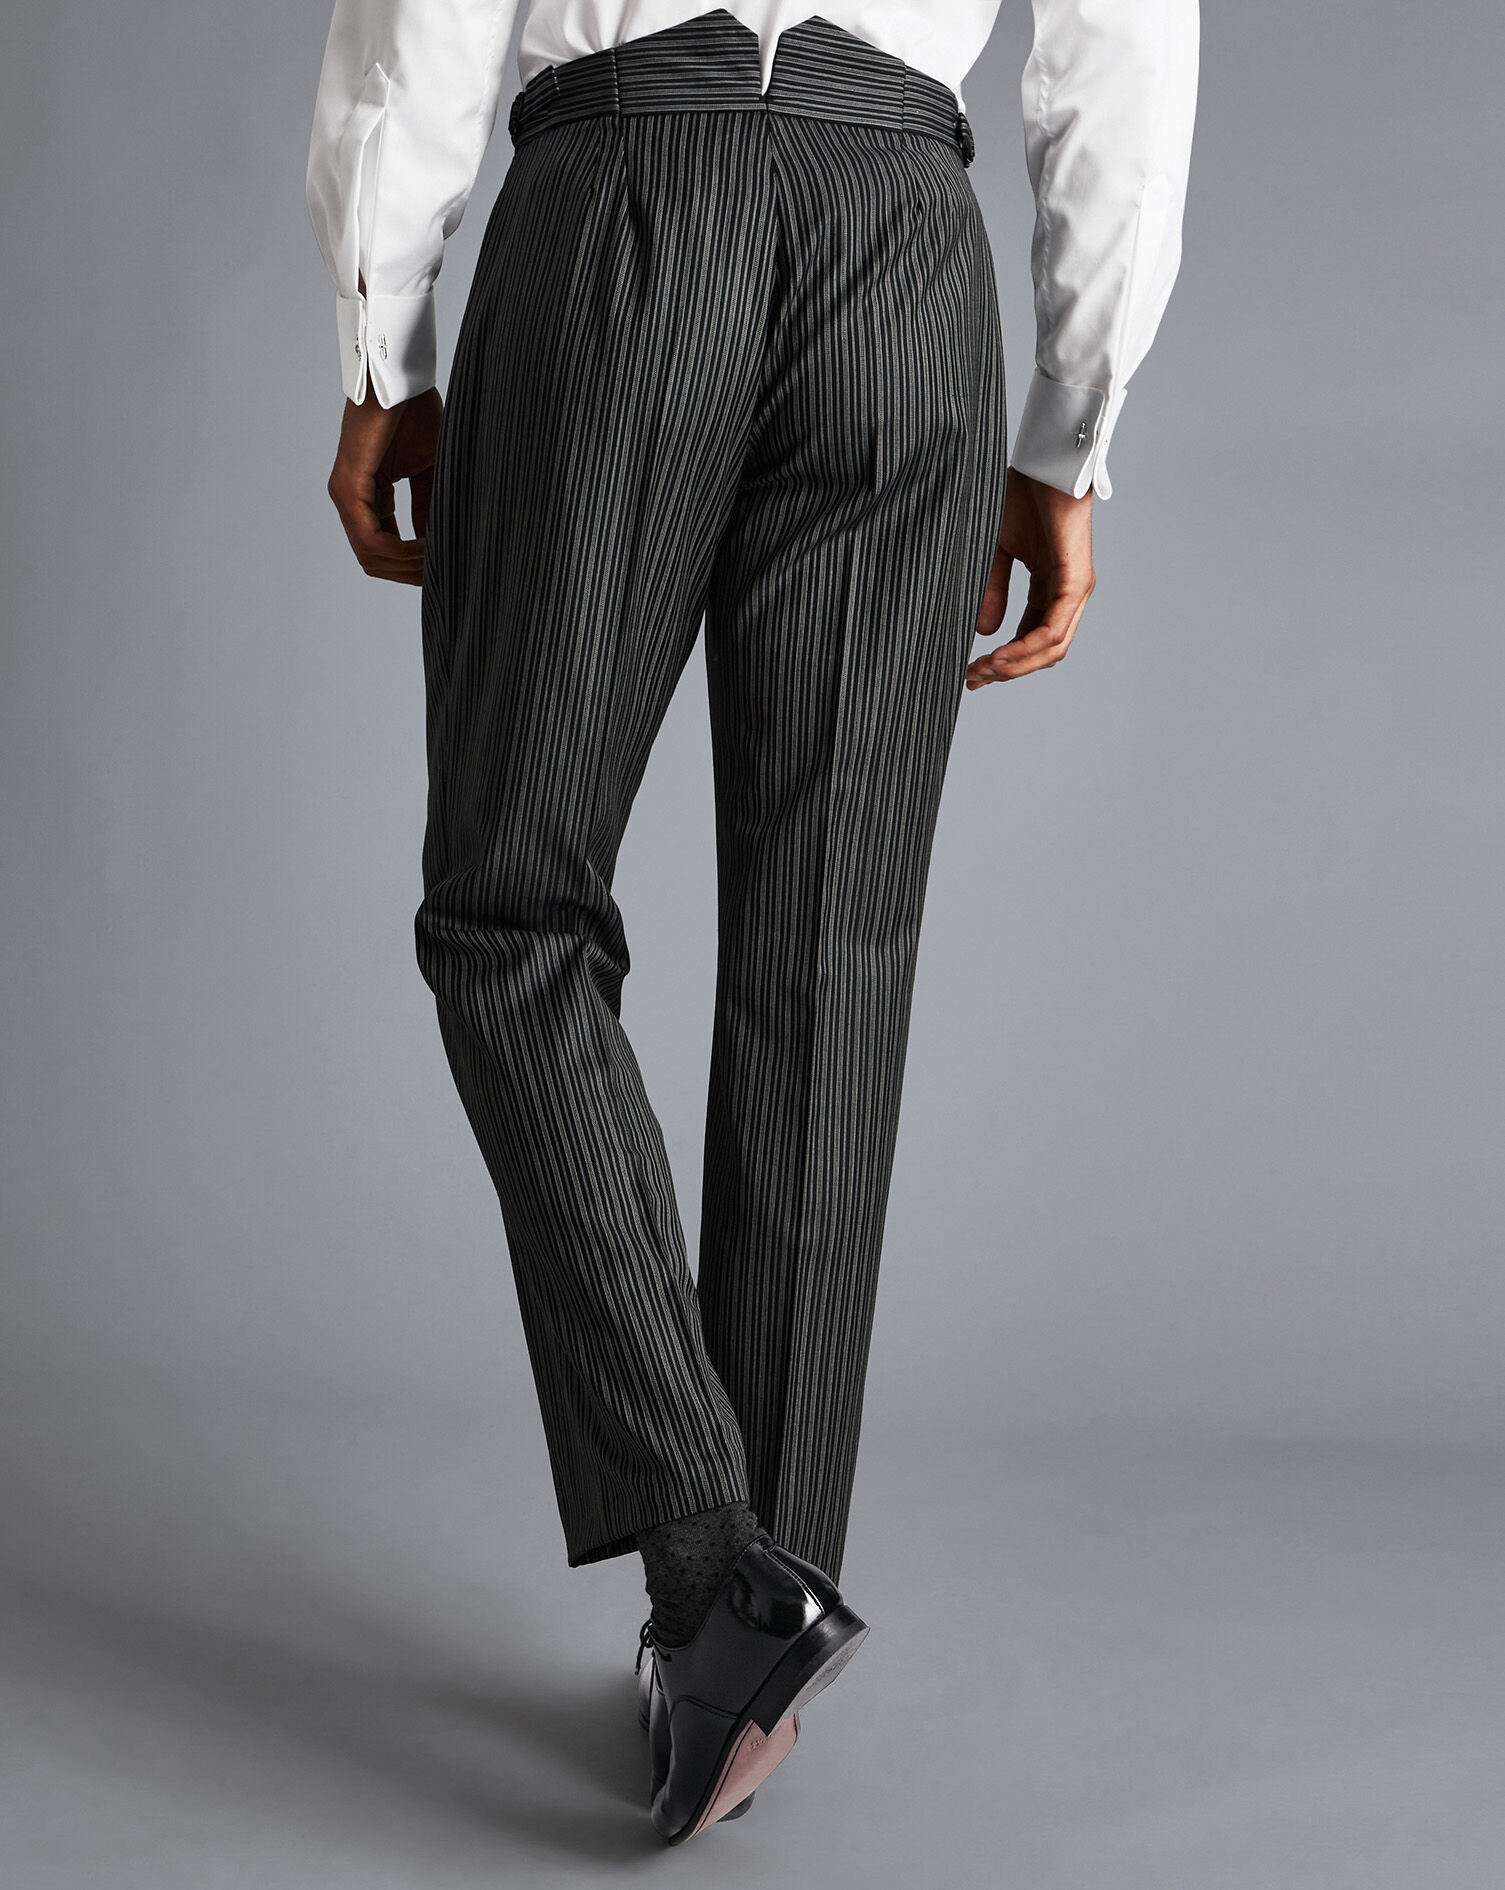 Stefanel Suit Trouser black striped pattern business style Fashion Suits Suit Trousers 